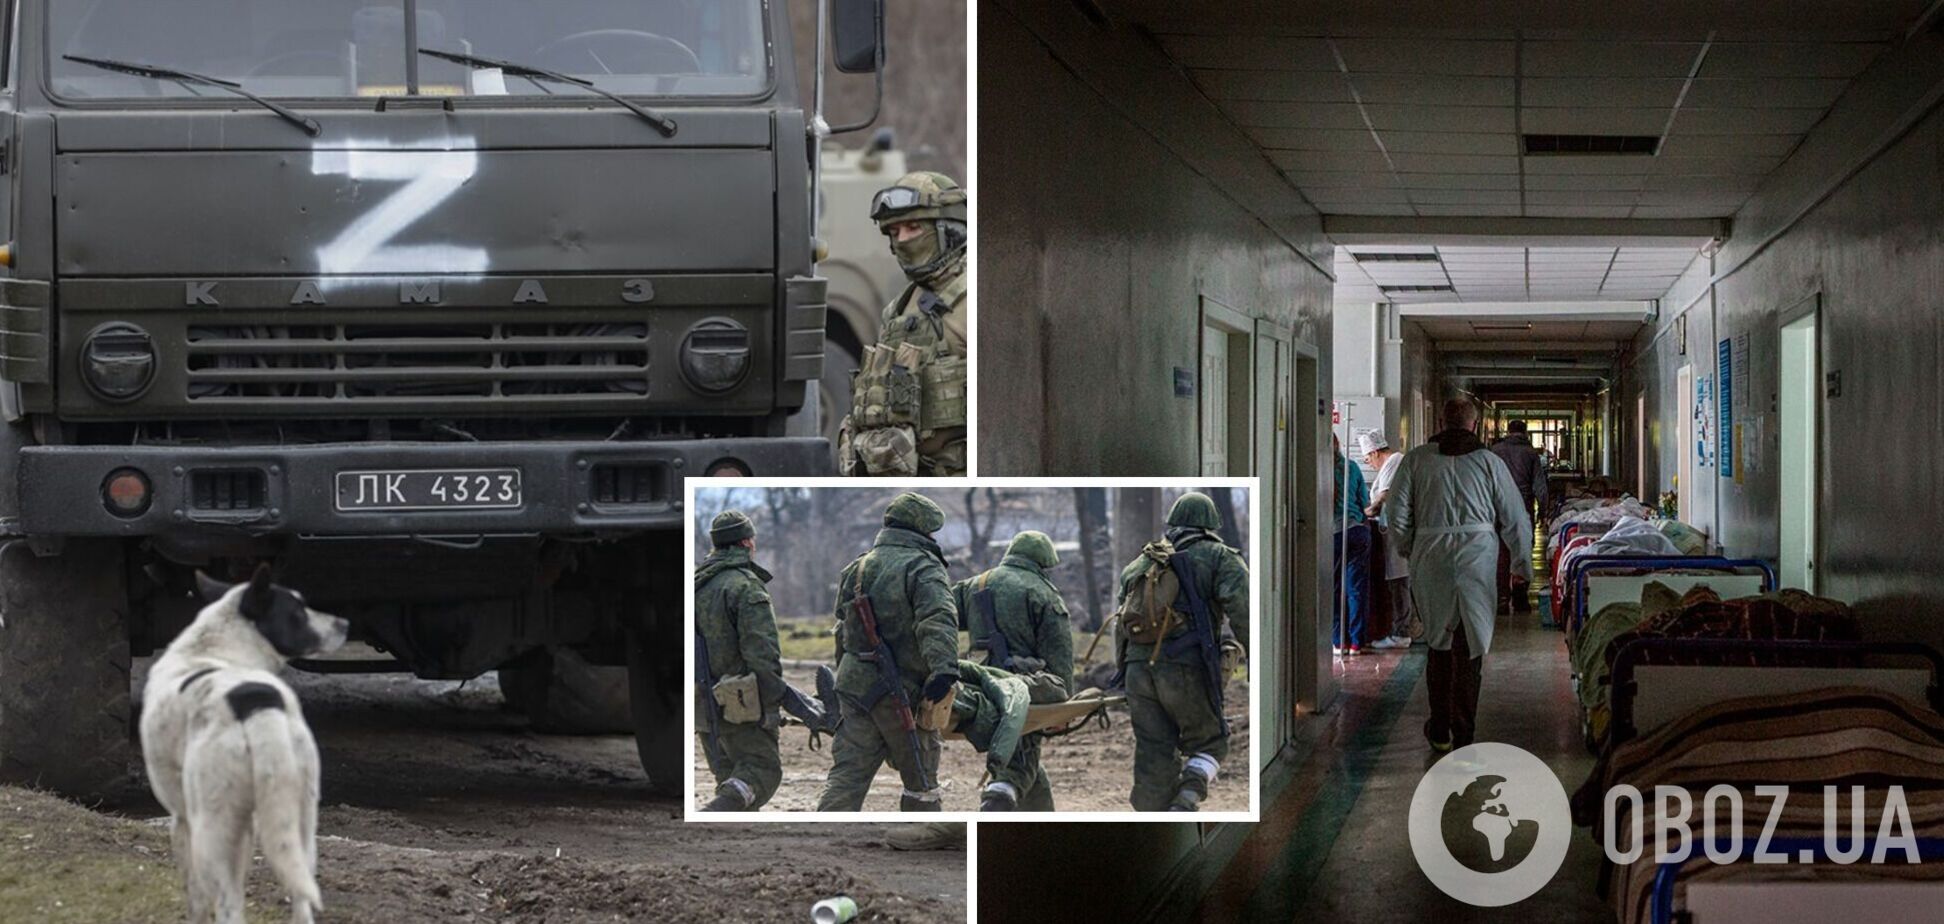 Оккупанты в Беловодске обустроили военный госпиталь на базе больницы: гражданских 'выписали' из учреждения – Генштаб